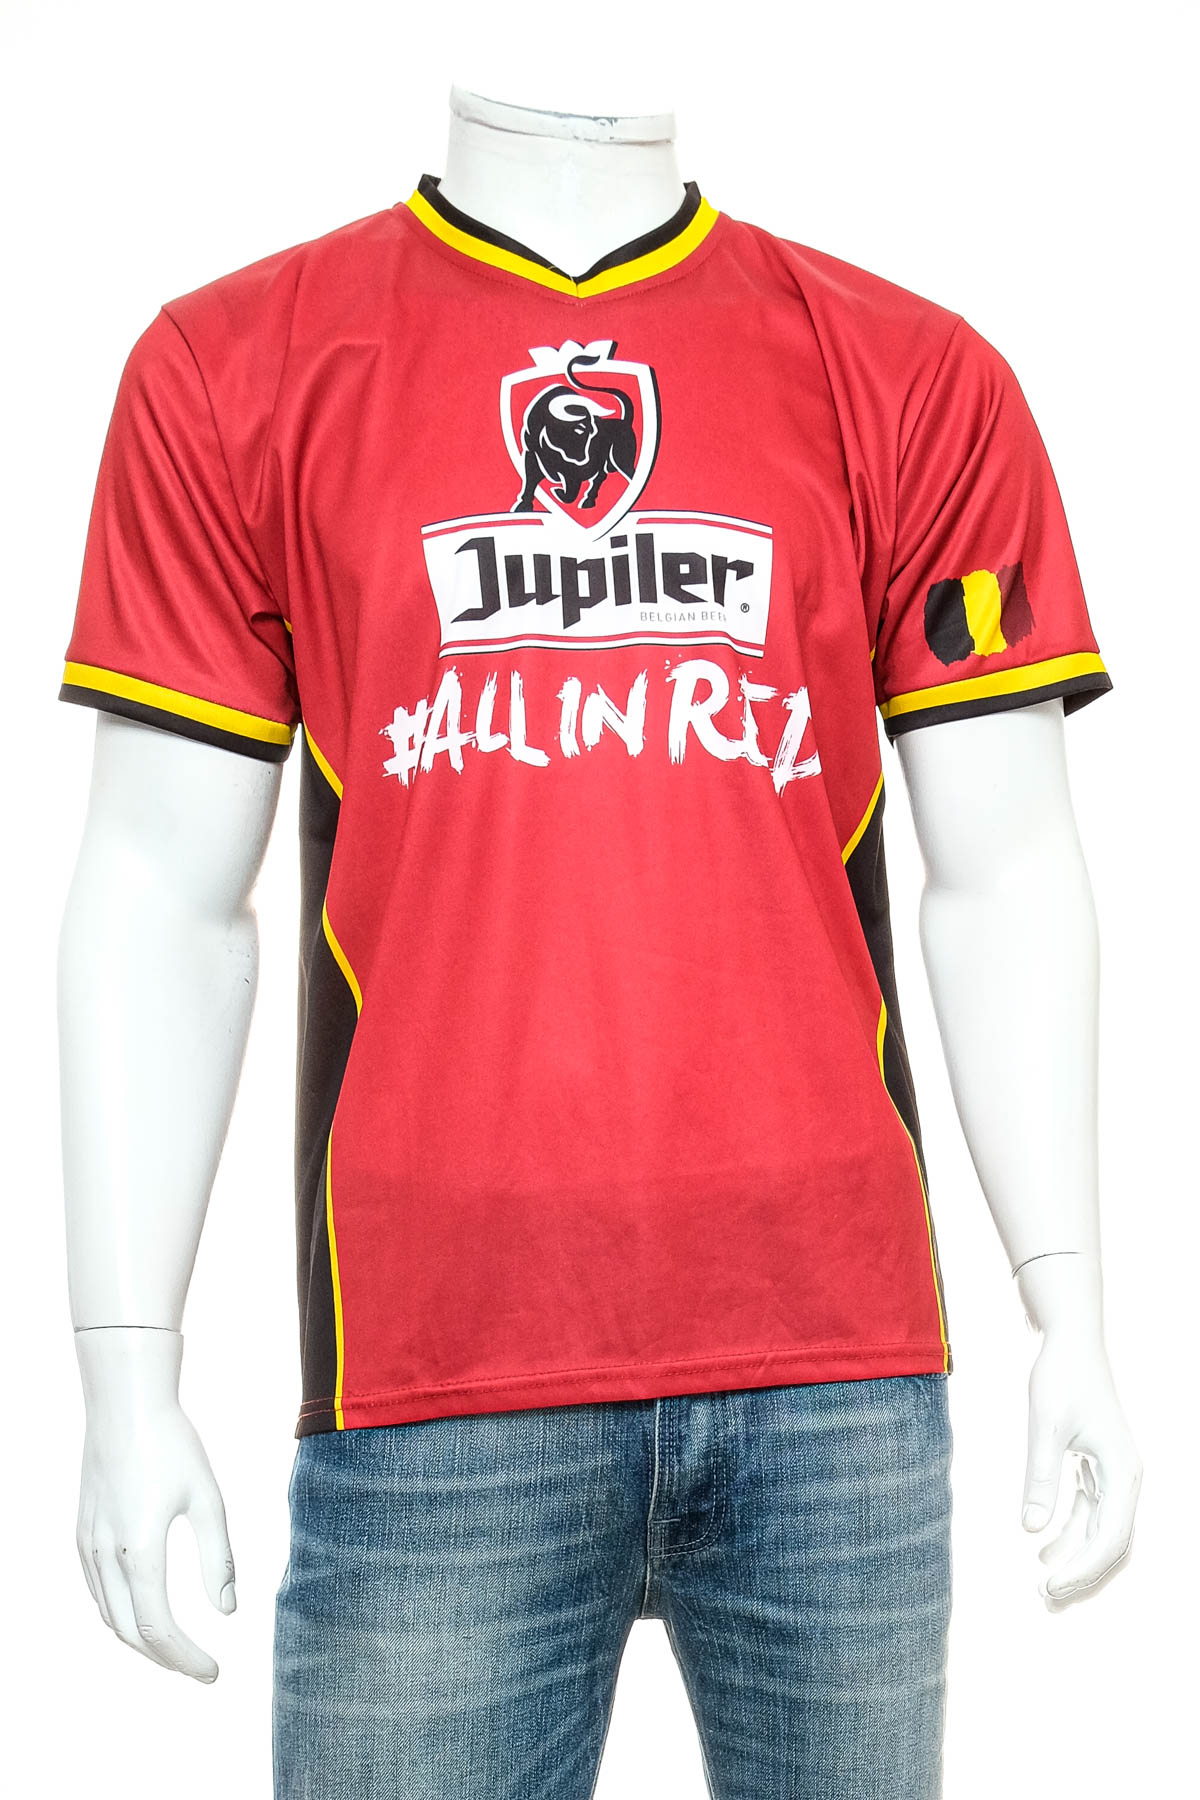 Αντρική μπλούζα - Jupiler - 0